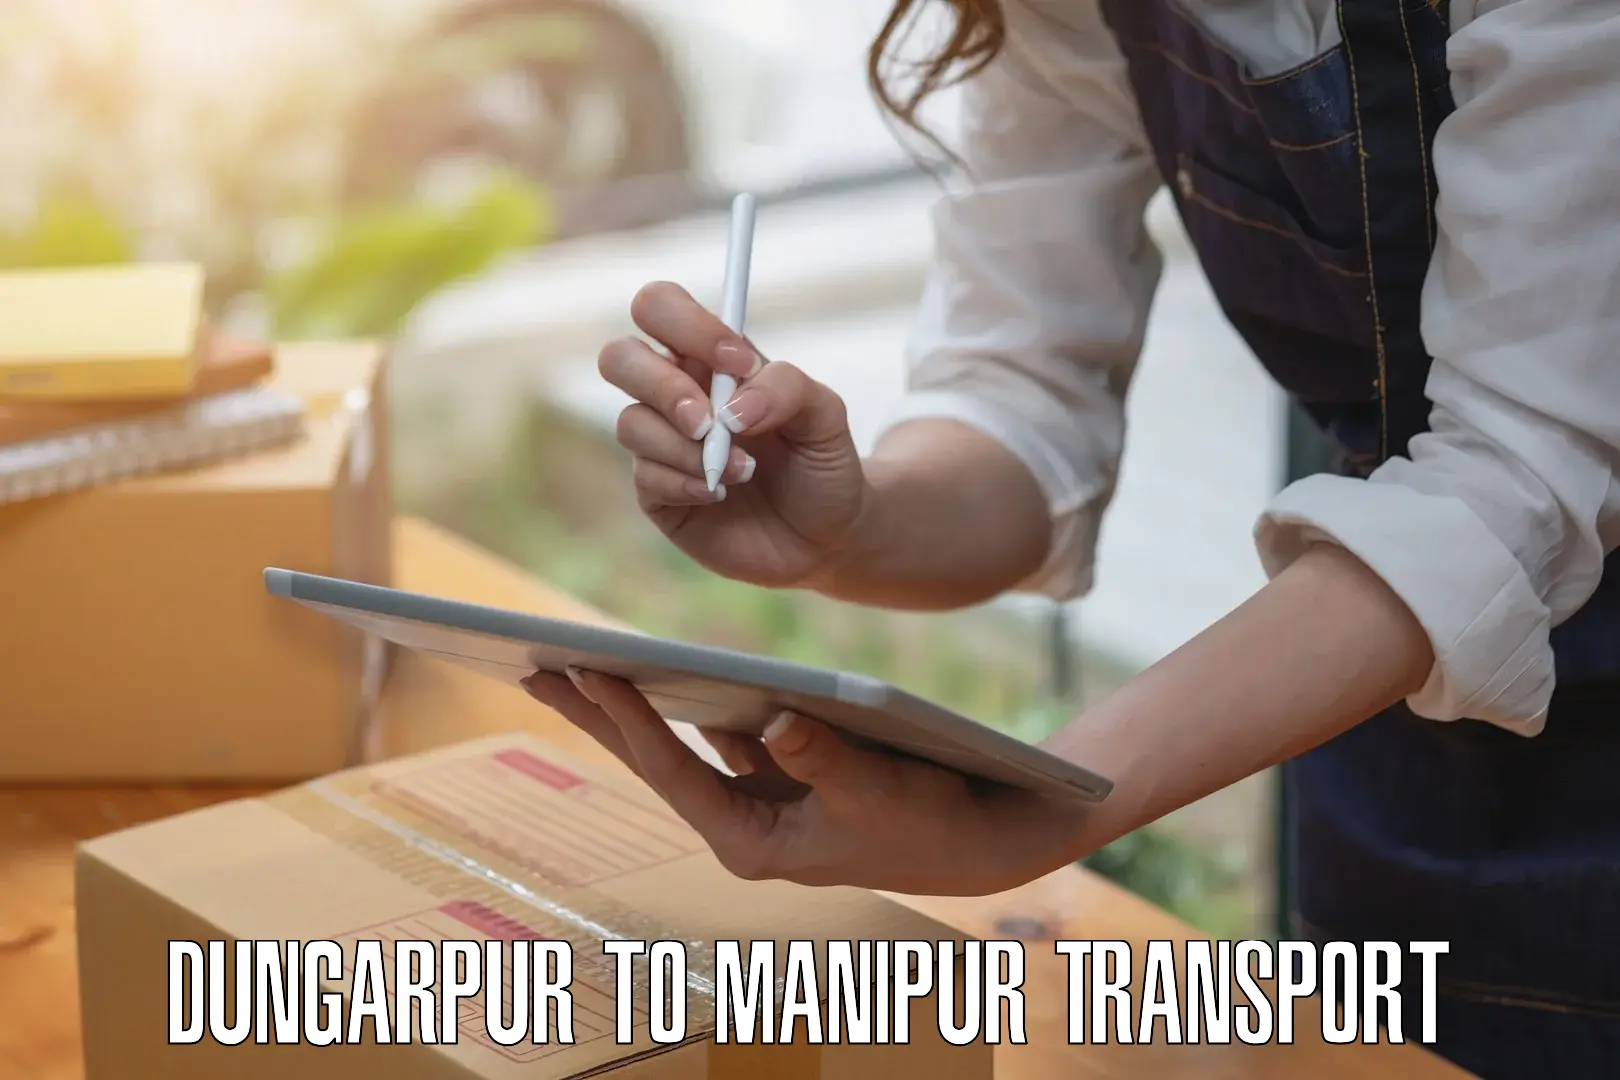 Online transport service Dungarpur to Kaptipada